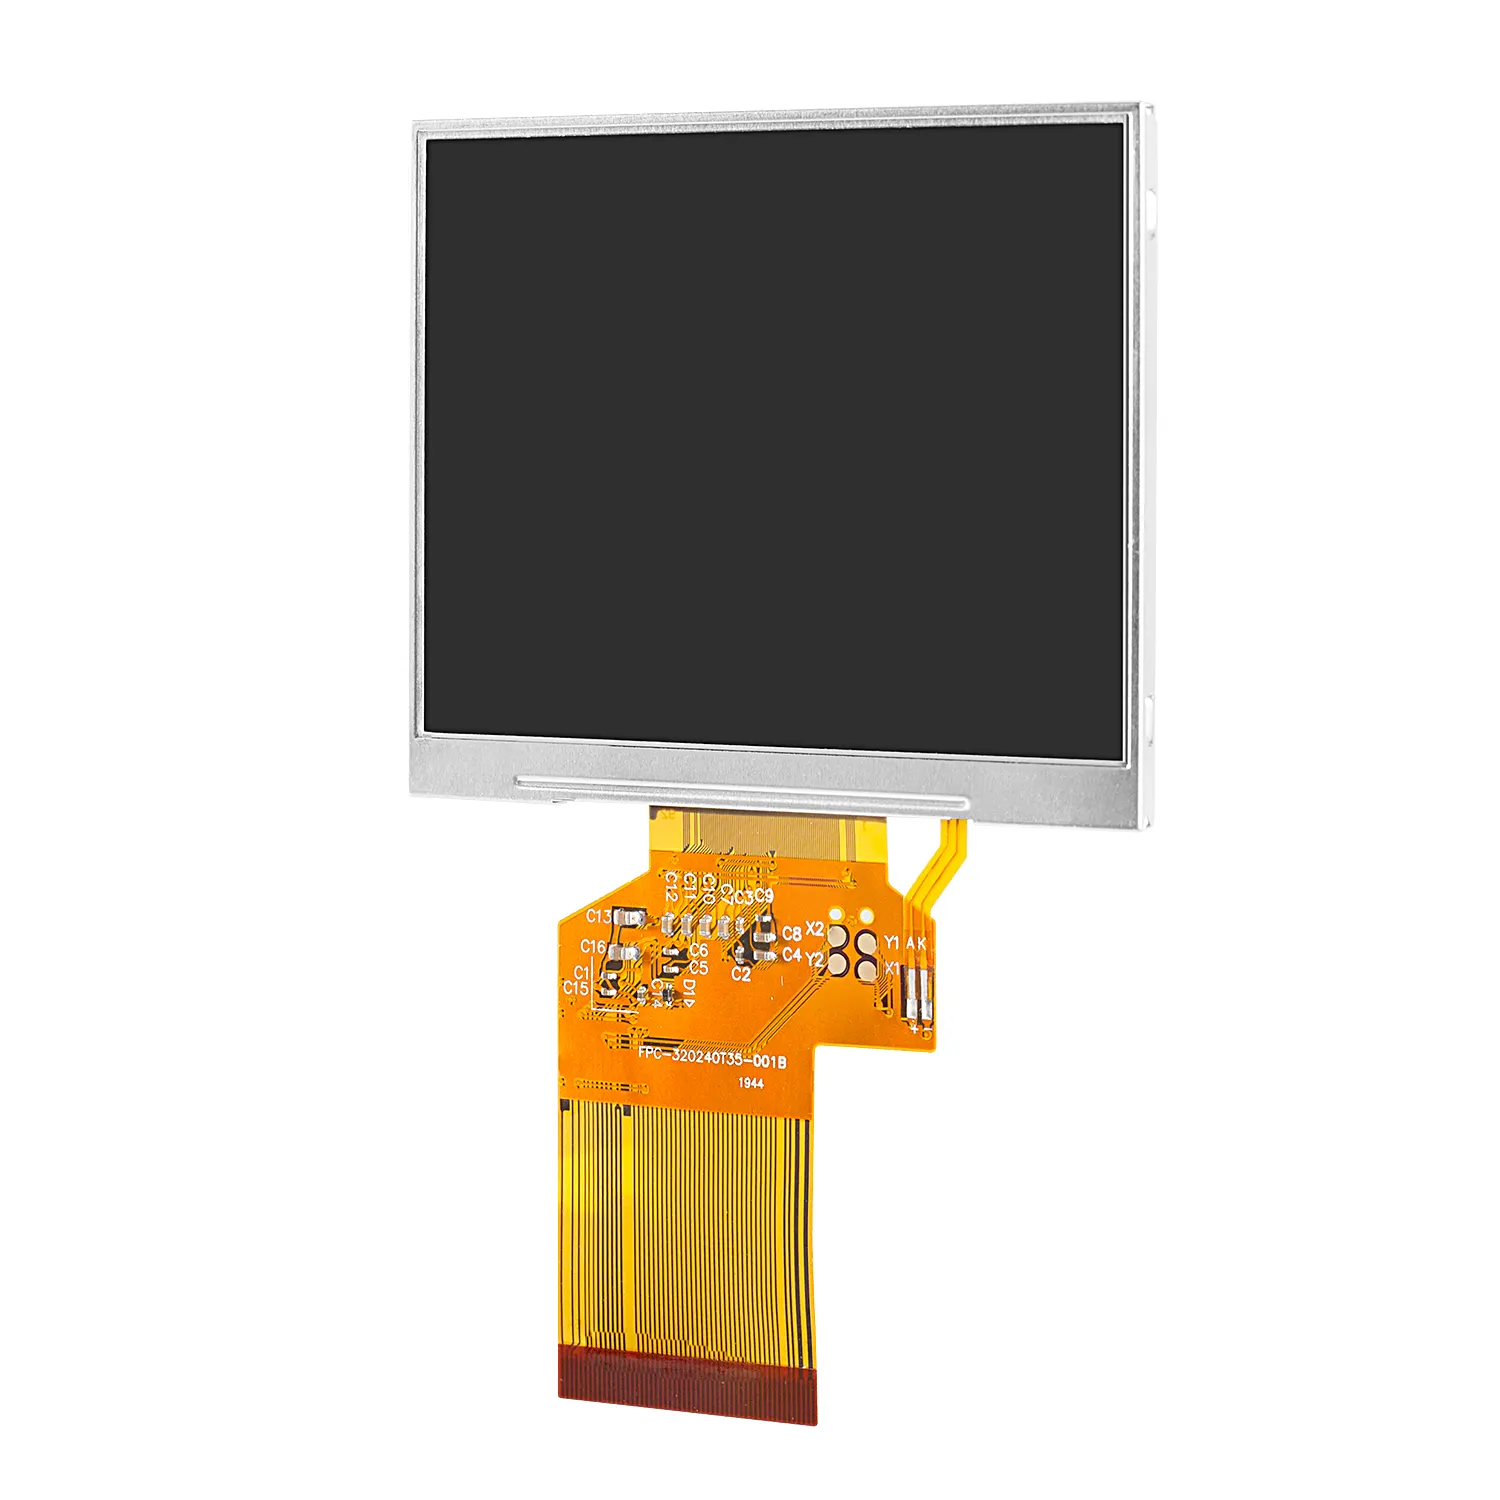 Módulo de pantalla LCD de 3,5 pulgadas, 320x240 TN, paisaje transmisivo de temperatura amplia con interfaz SPI y RGB, suministro estable